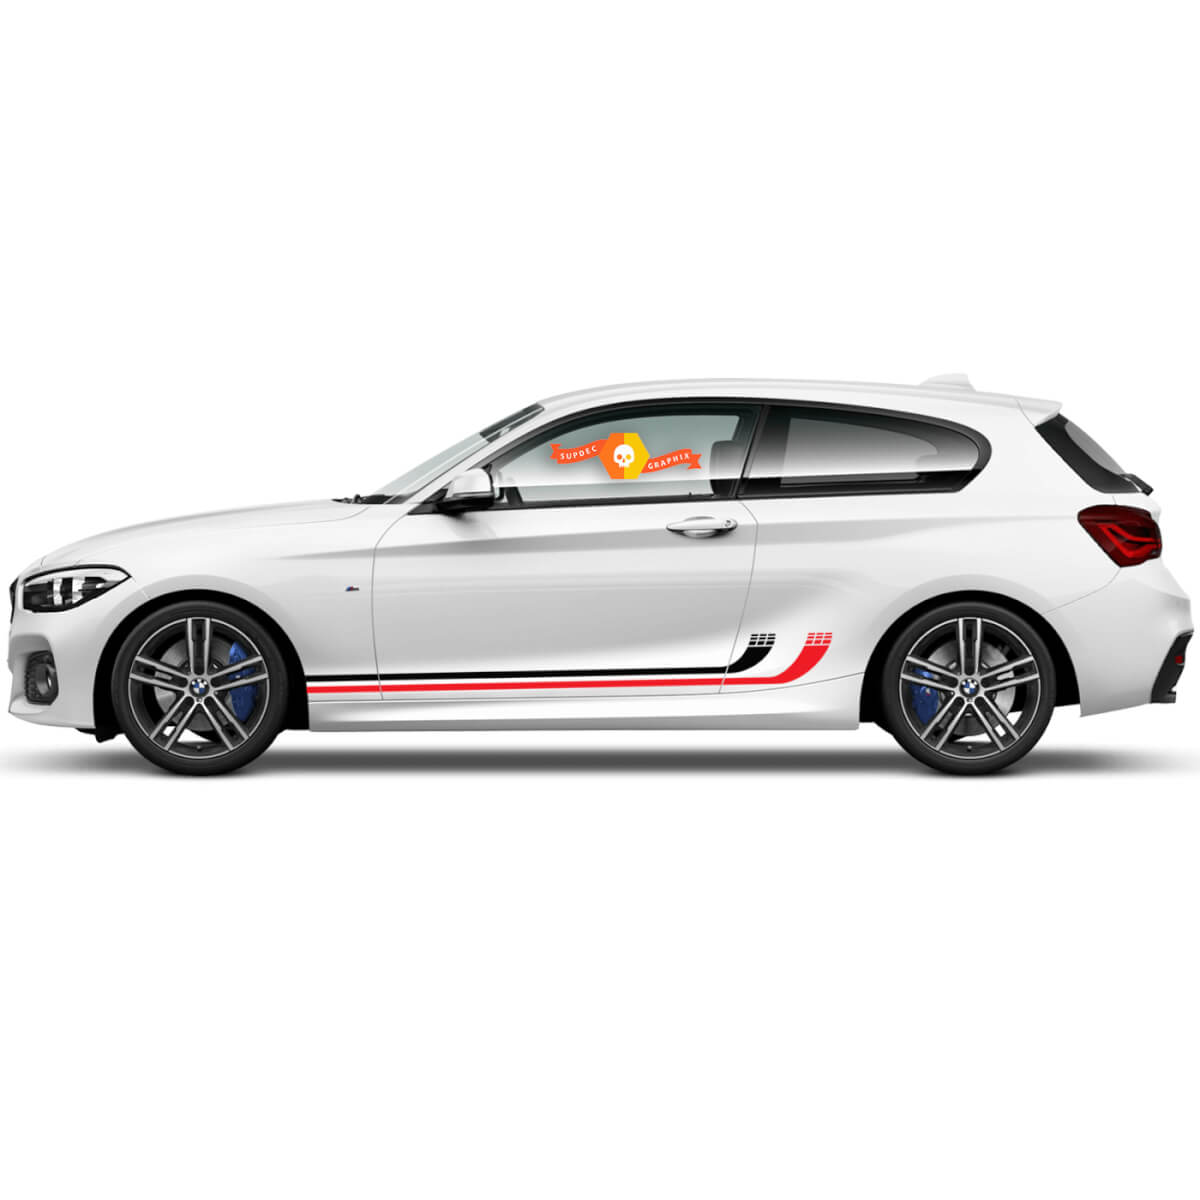 2 x decalcomanie in vinile adesivi grafici laterali BMW Serie 1 2015 strisce curve per porte nuove
